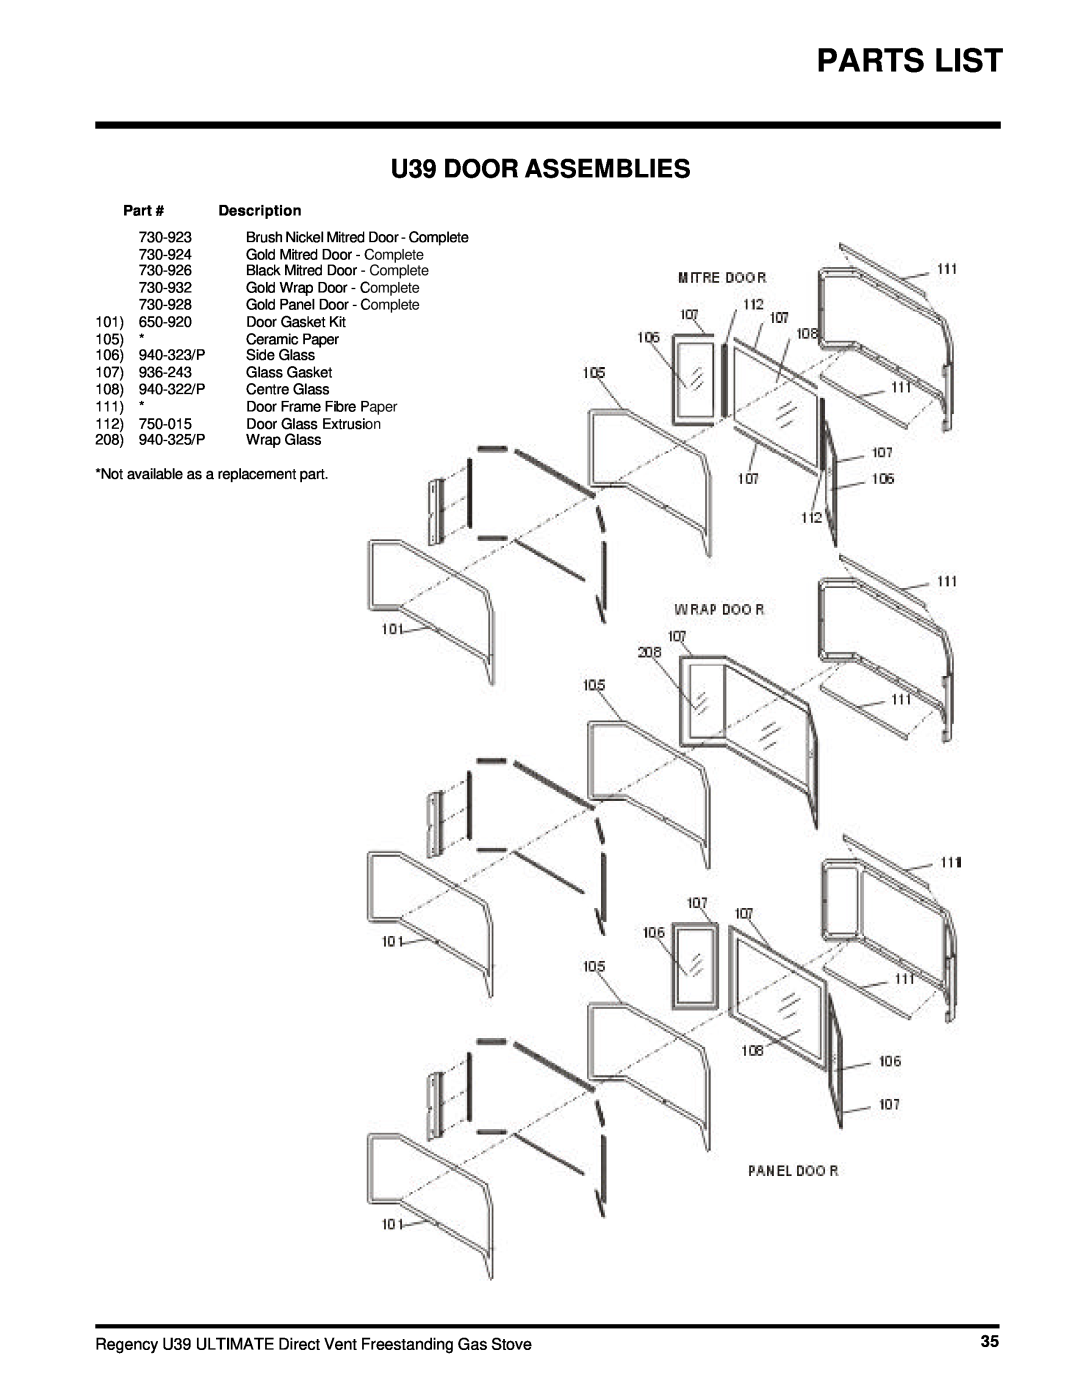 Regency U39-NG, U39-LP installation manual U39 DOOR ASSEMBLIES, Part #, Description 